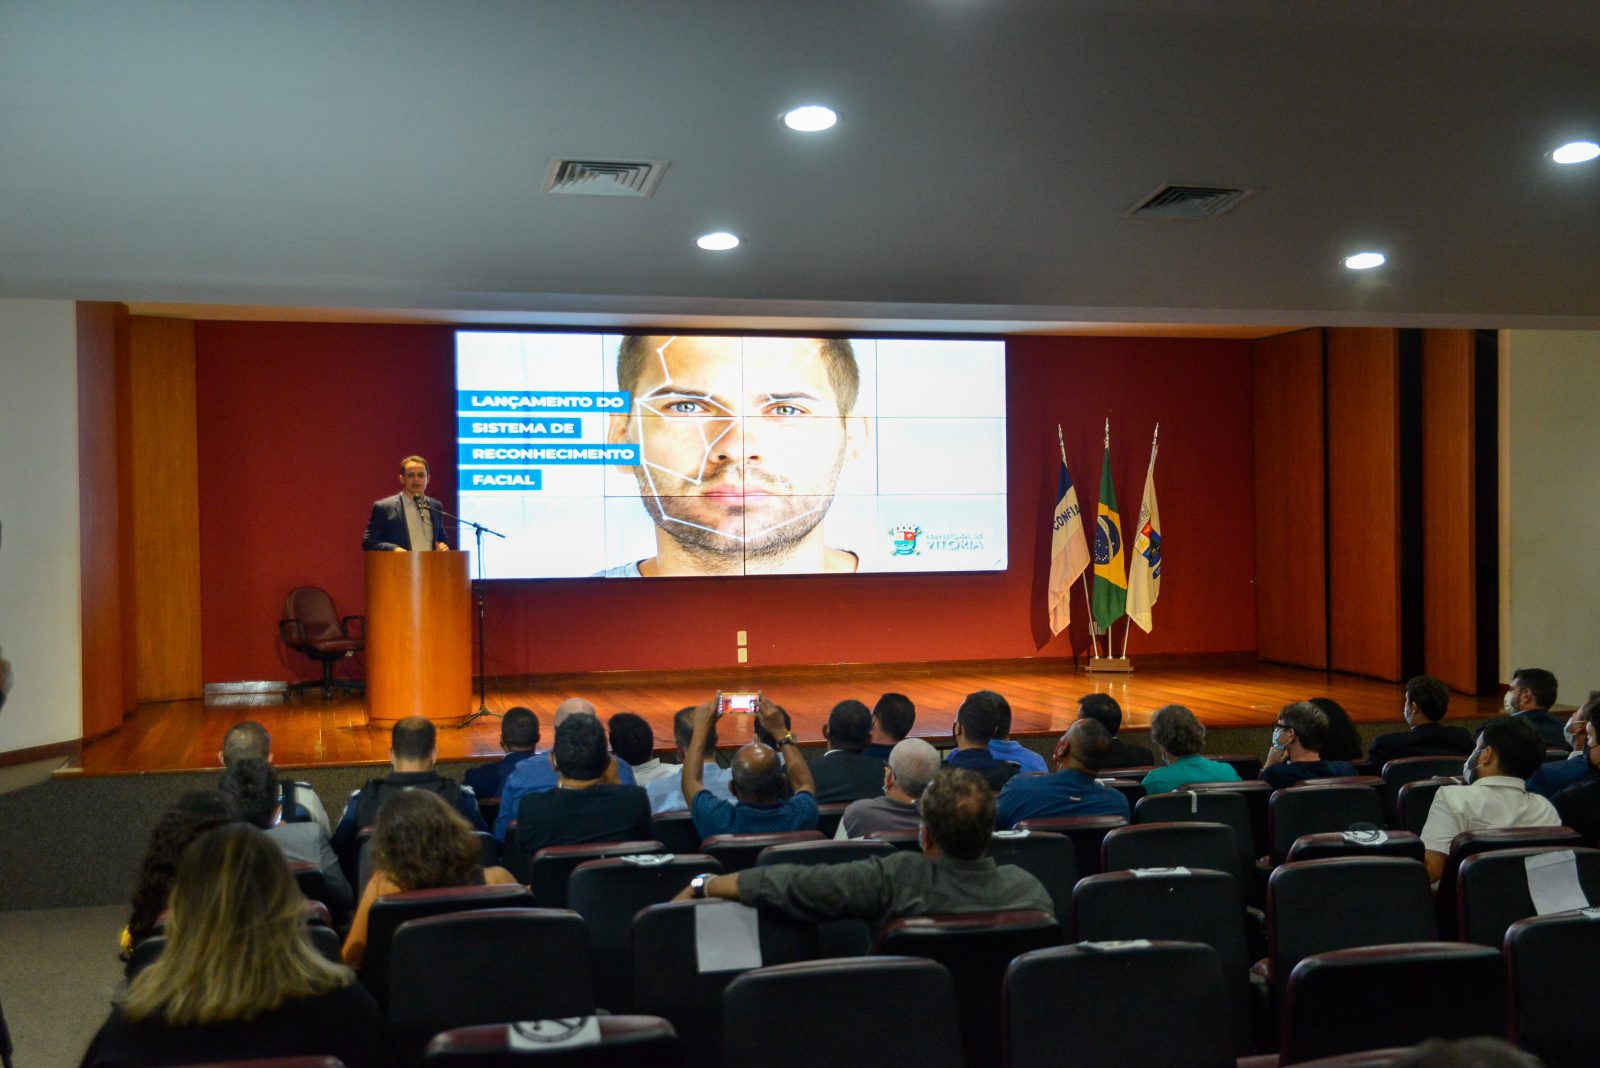 Vitória será a primeira capital do país a implementar reconhecimento facial em combate ao crime